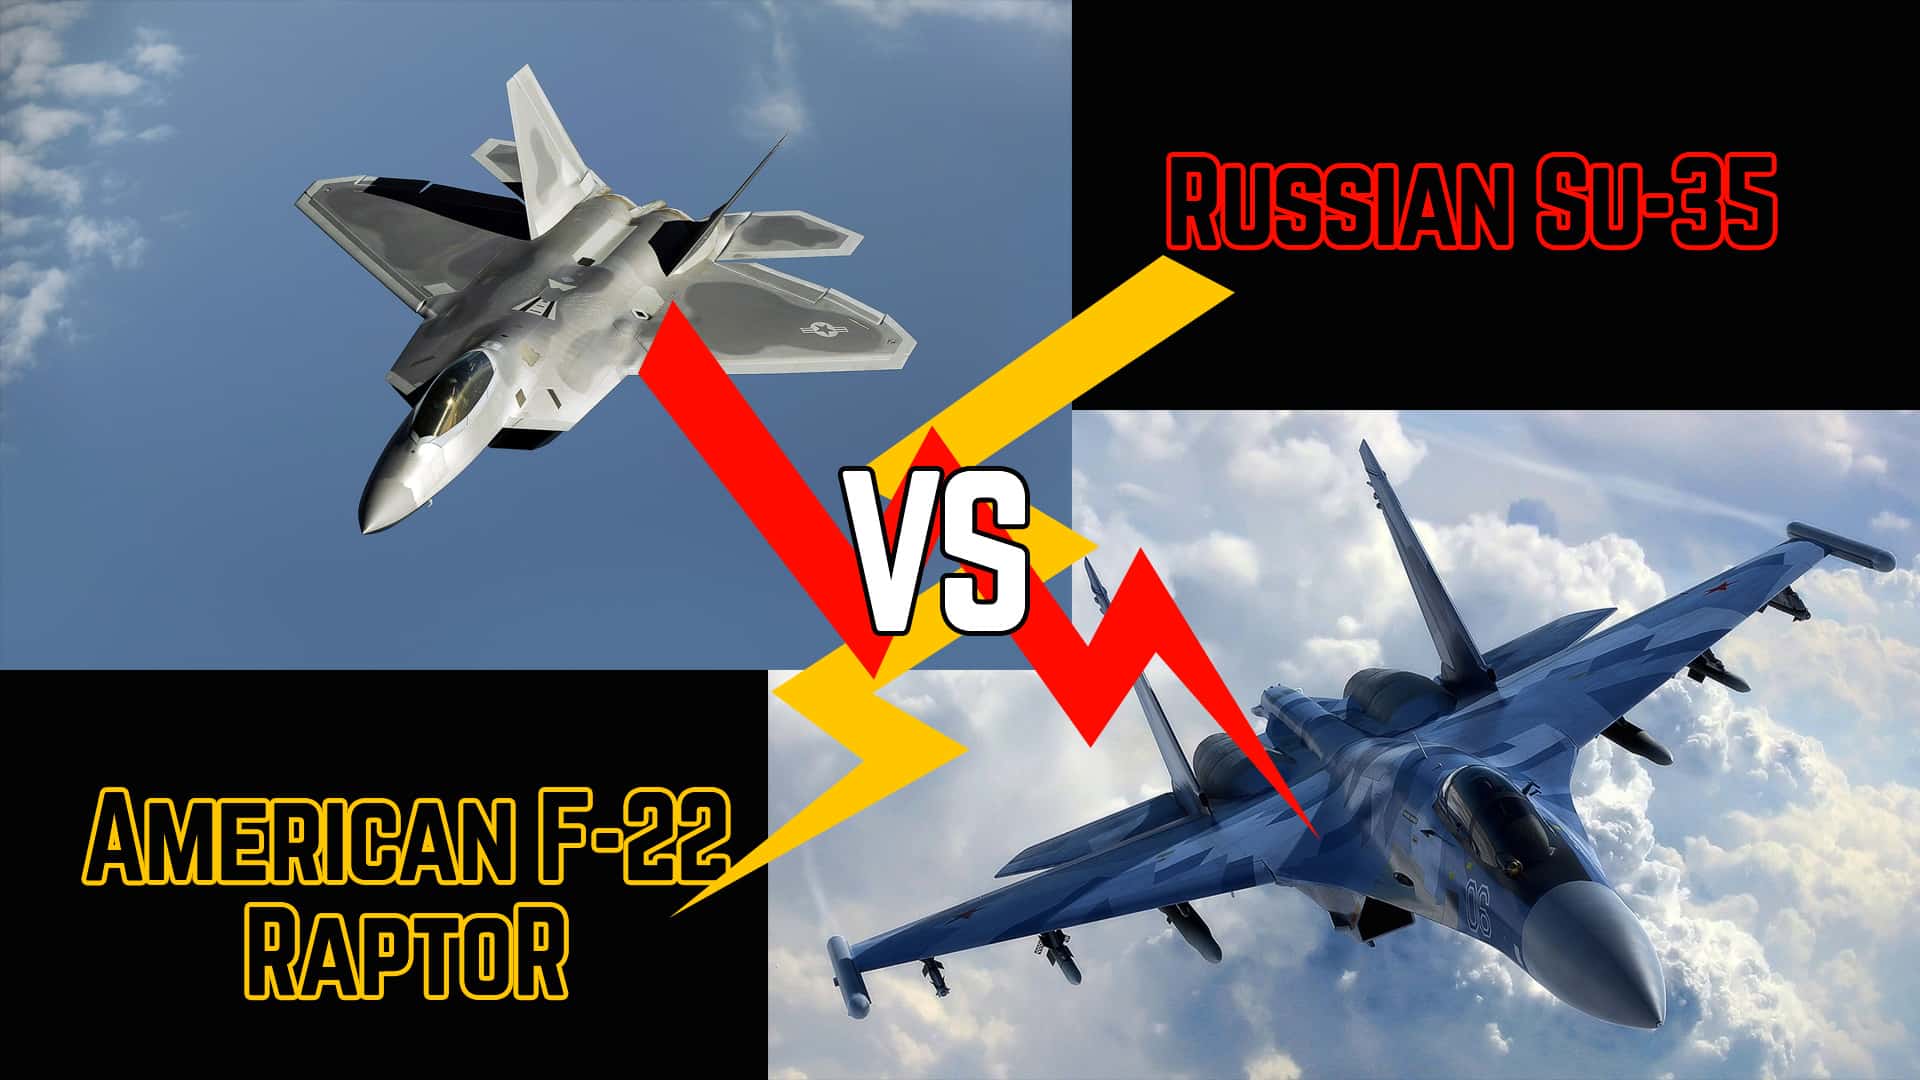 Fighters Clash: Who Will Win if Russian Su-35 vs American F-22 Raptor